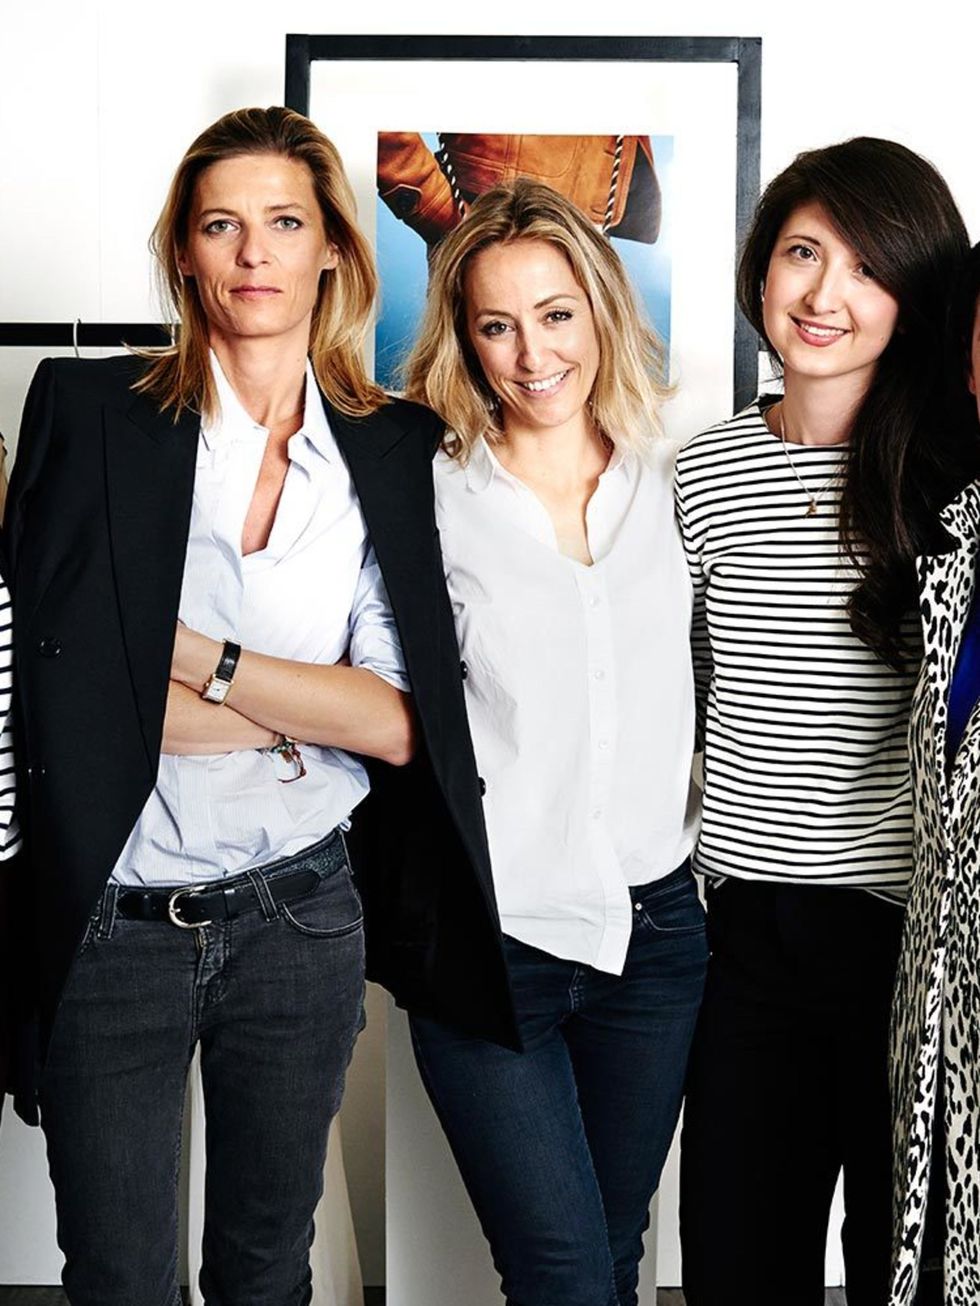 Louis Vuitton Jeans for Women - Vestiaire Collective